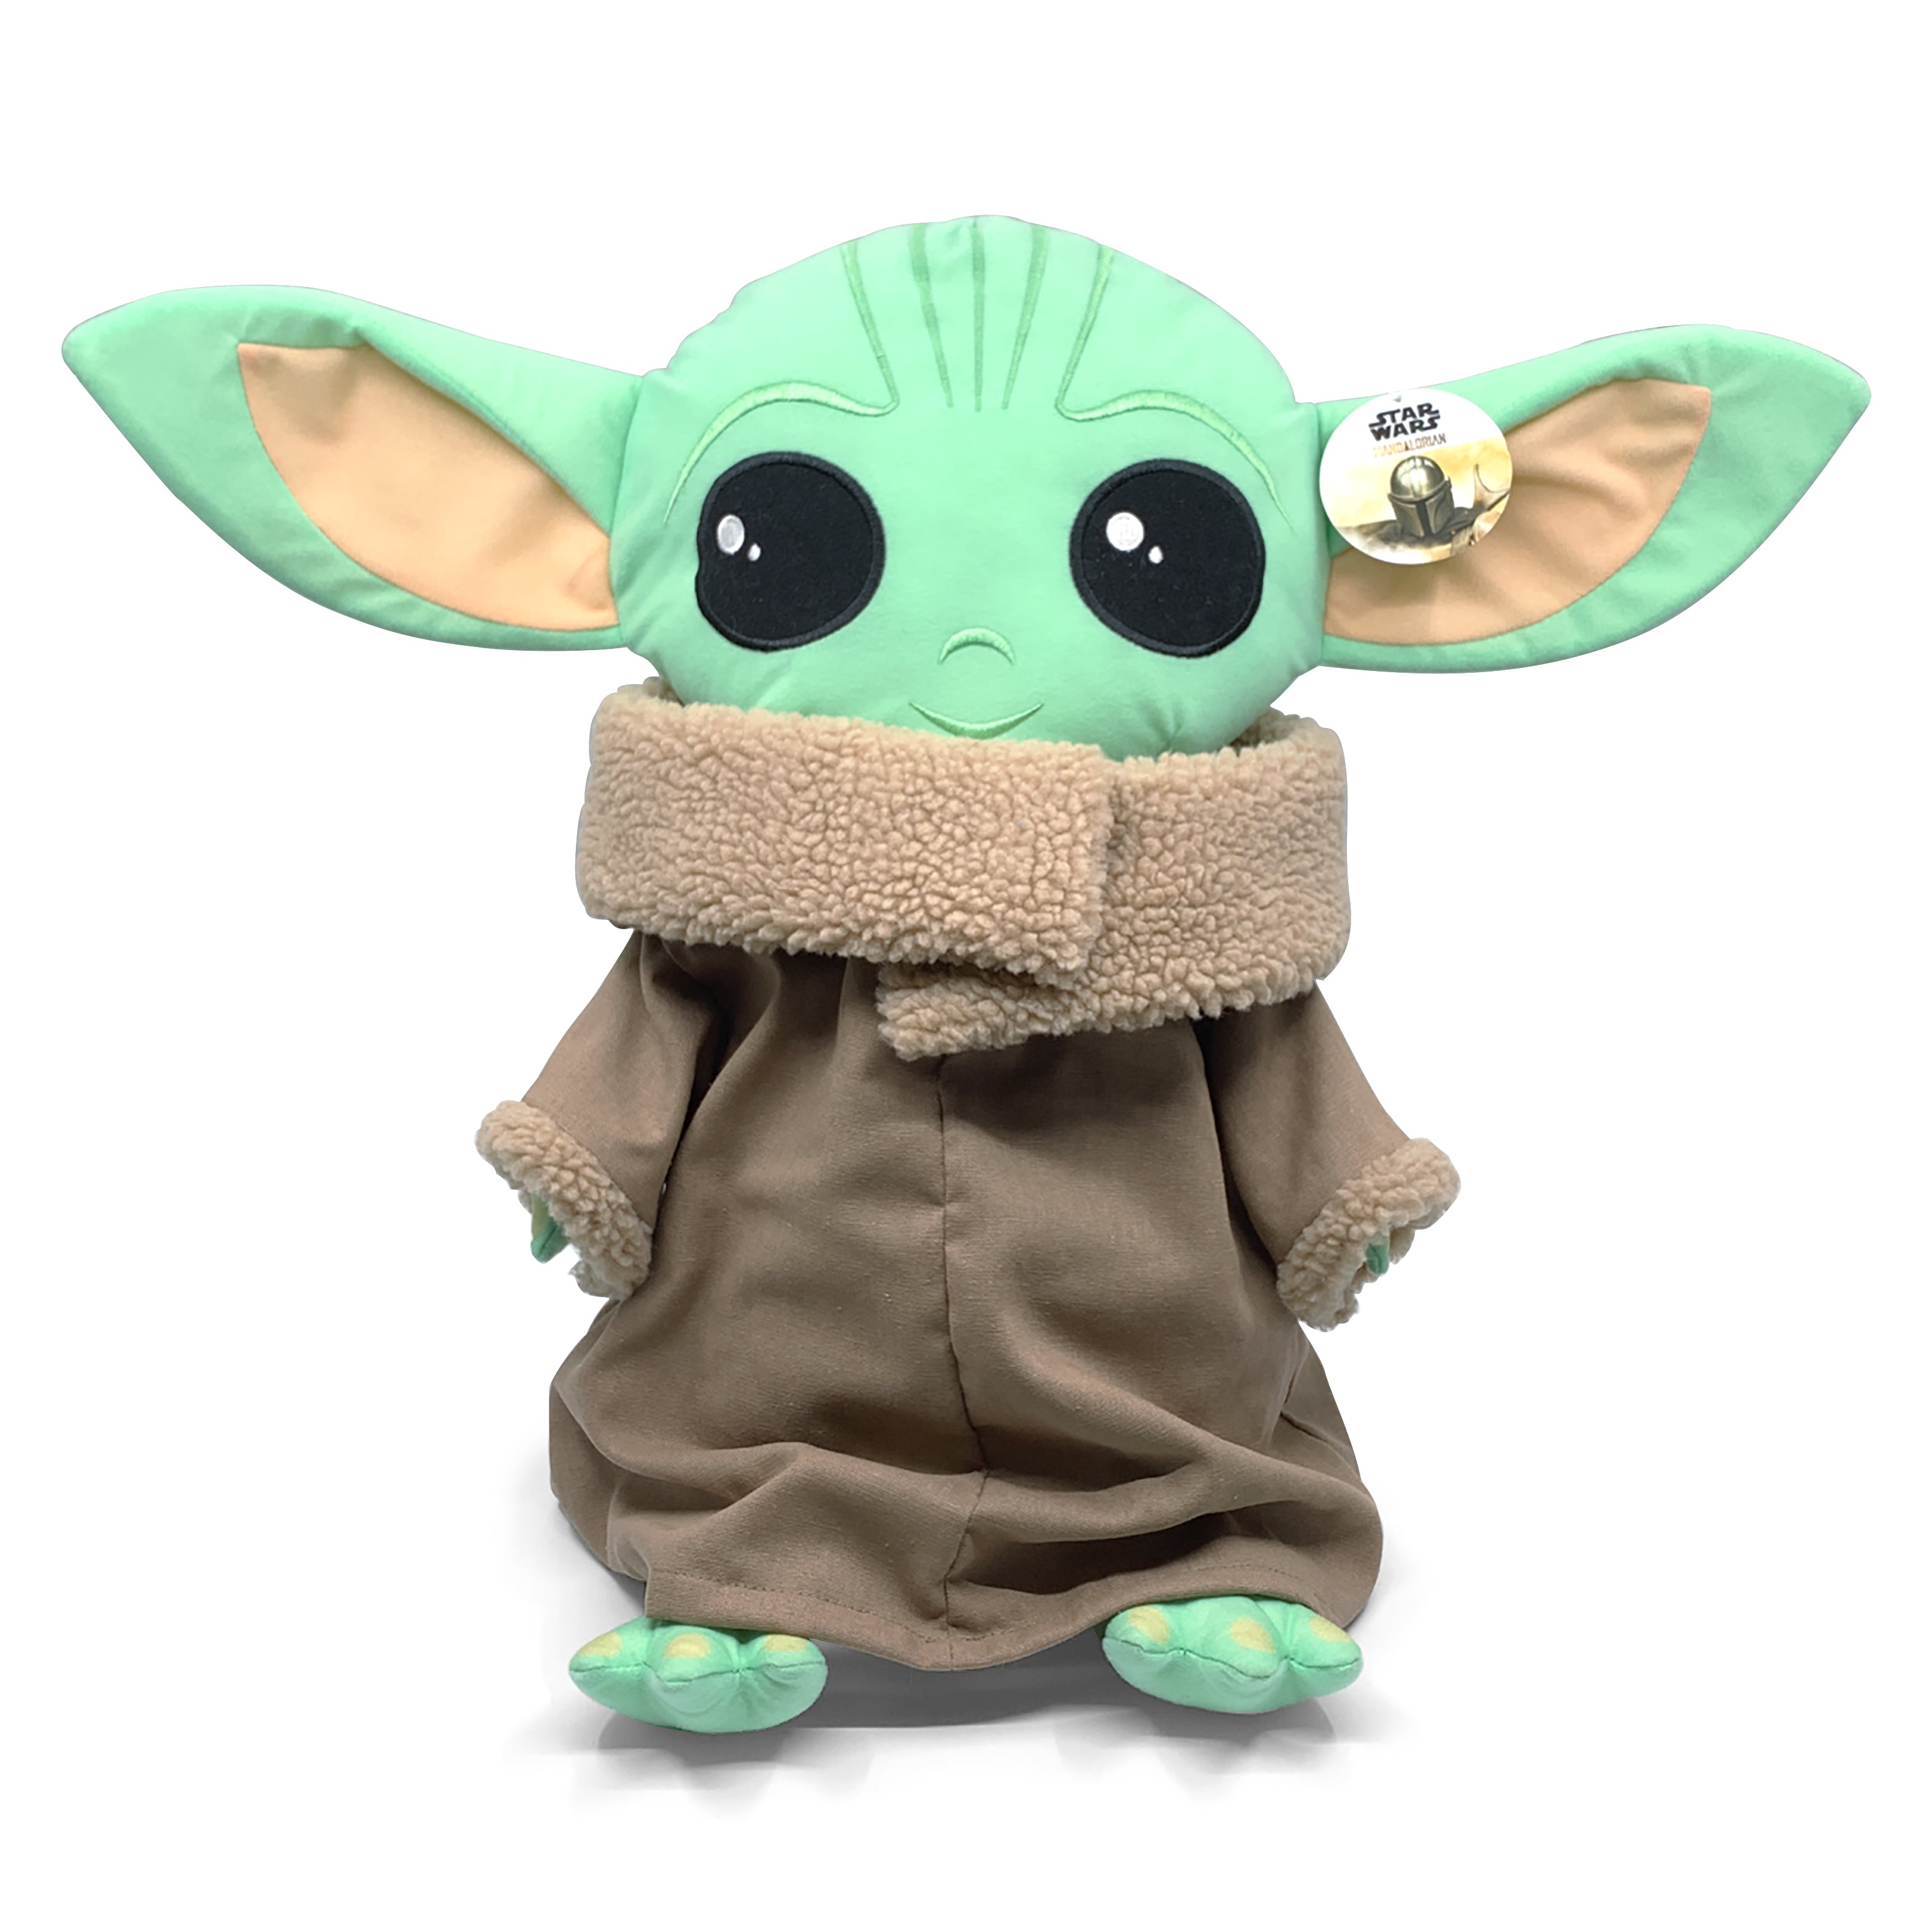 Es Baby Yoda el hijo de Yoda en The Mandalorian de Disney Plus?